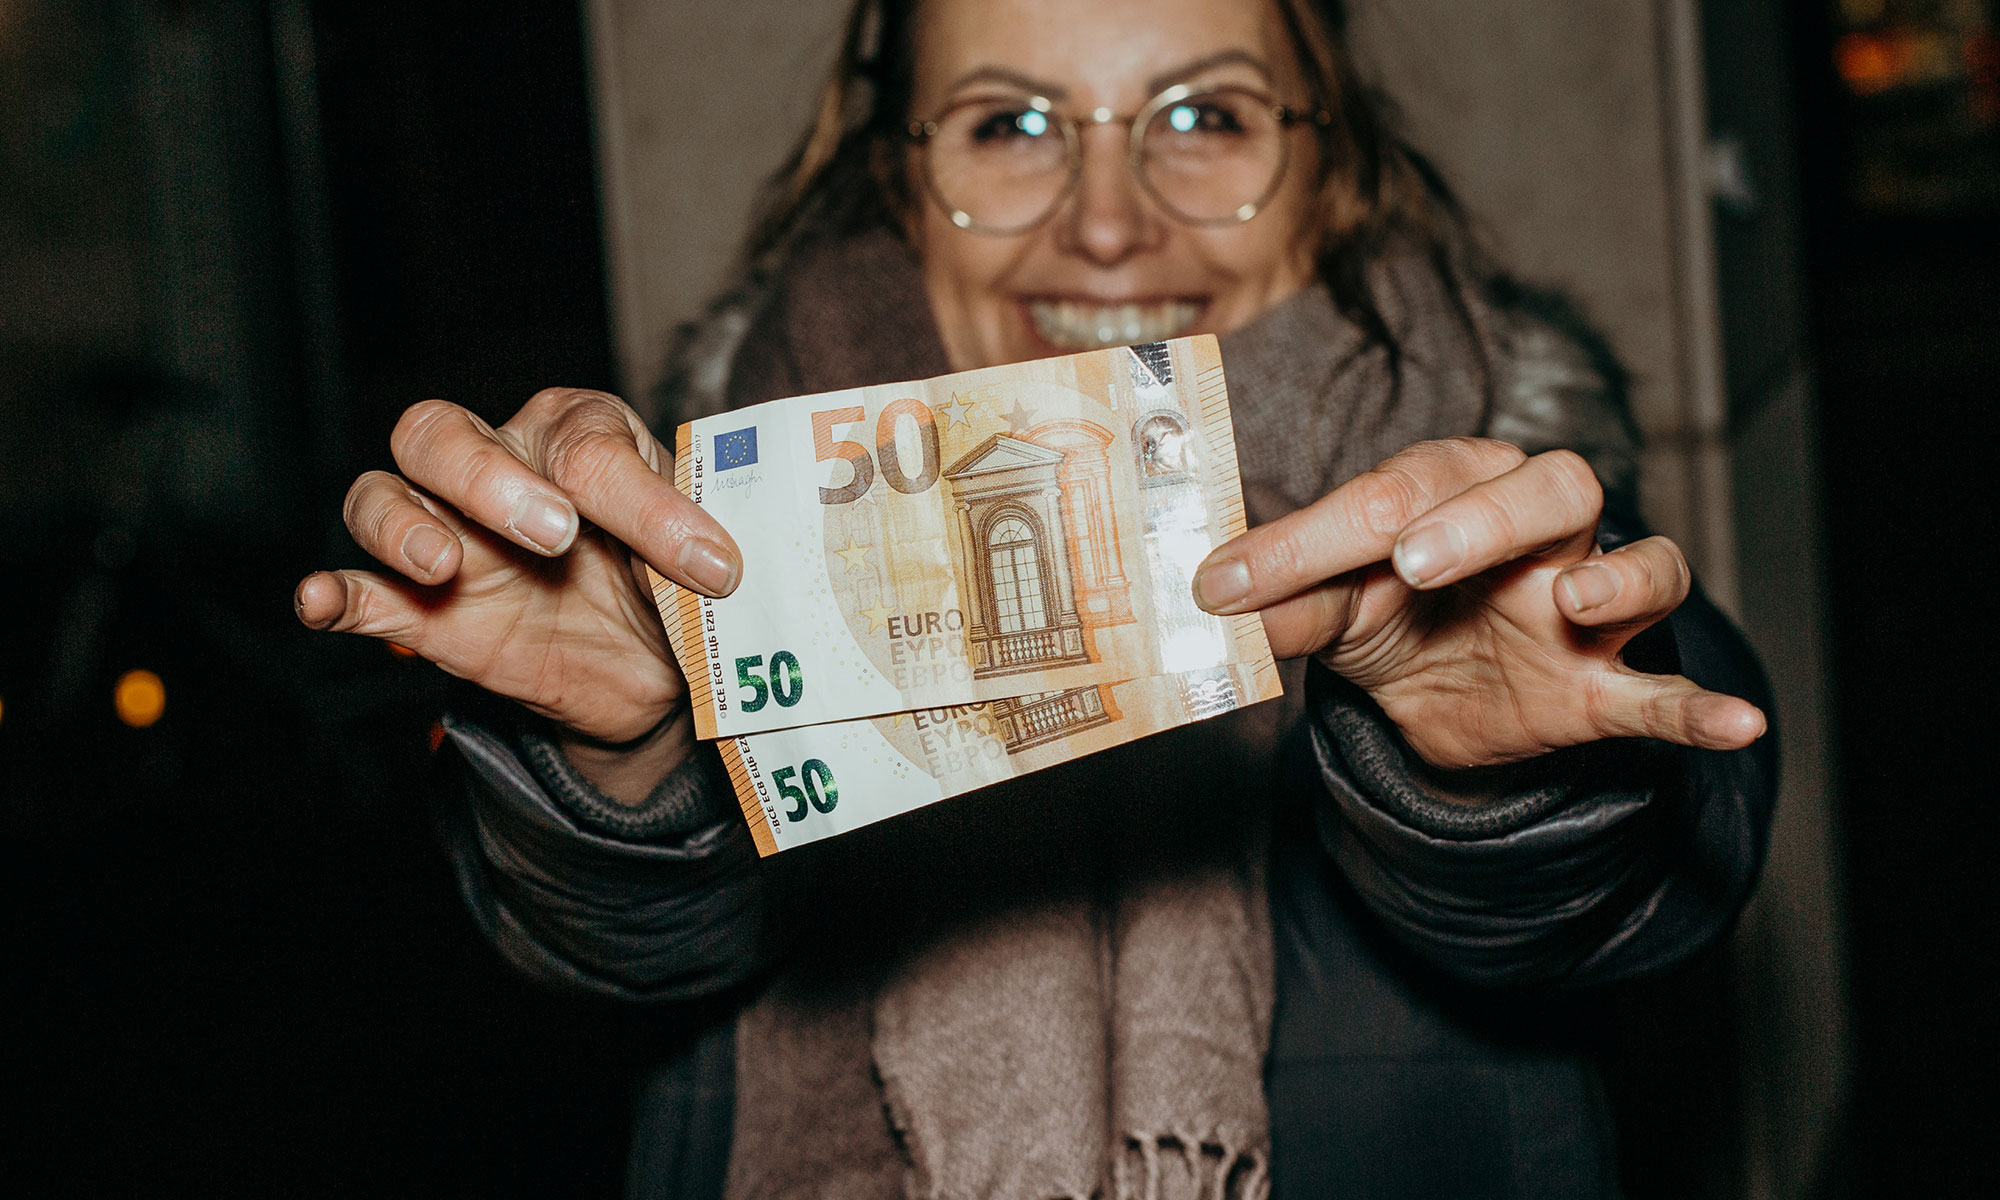 Siegburg hilft - Obdachlosenhilfe in Siegburg - Geld spenden